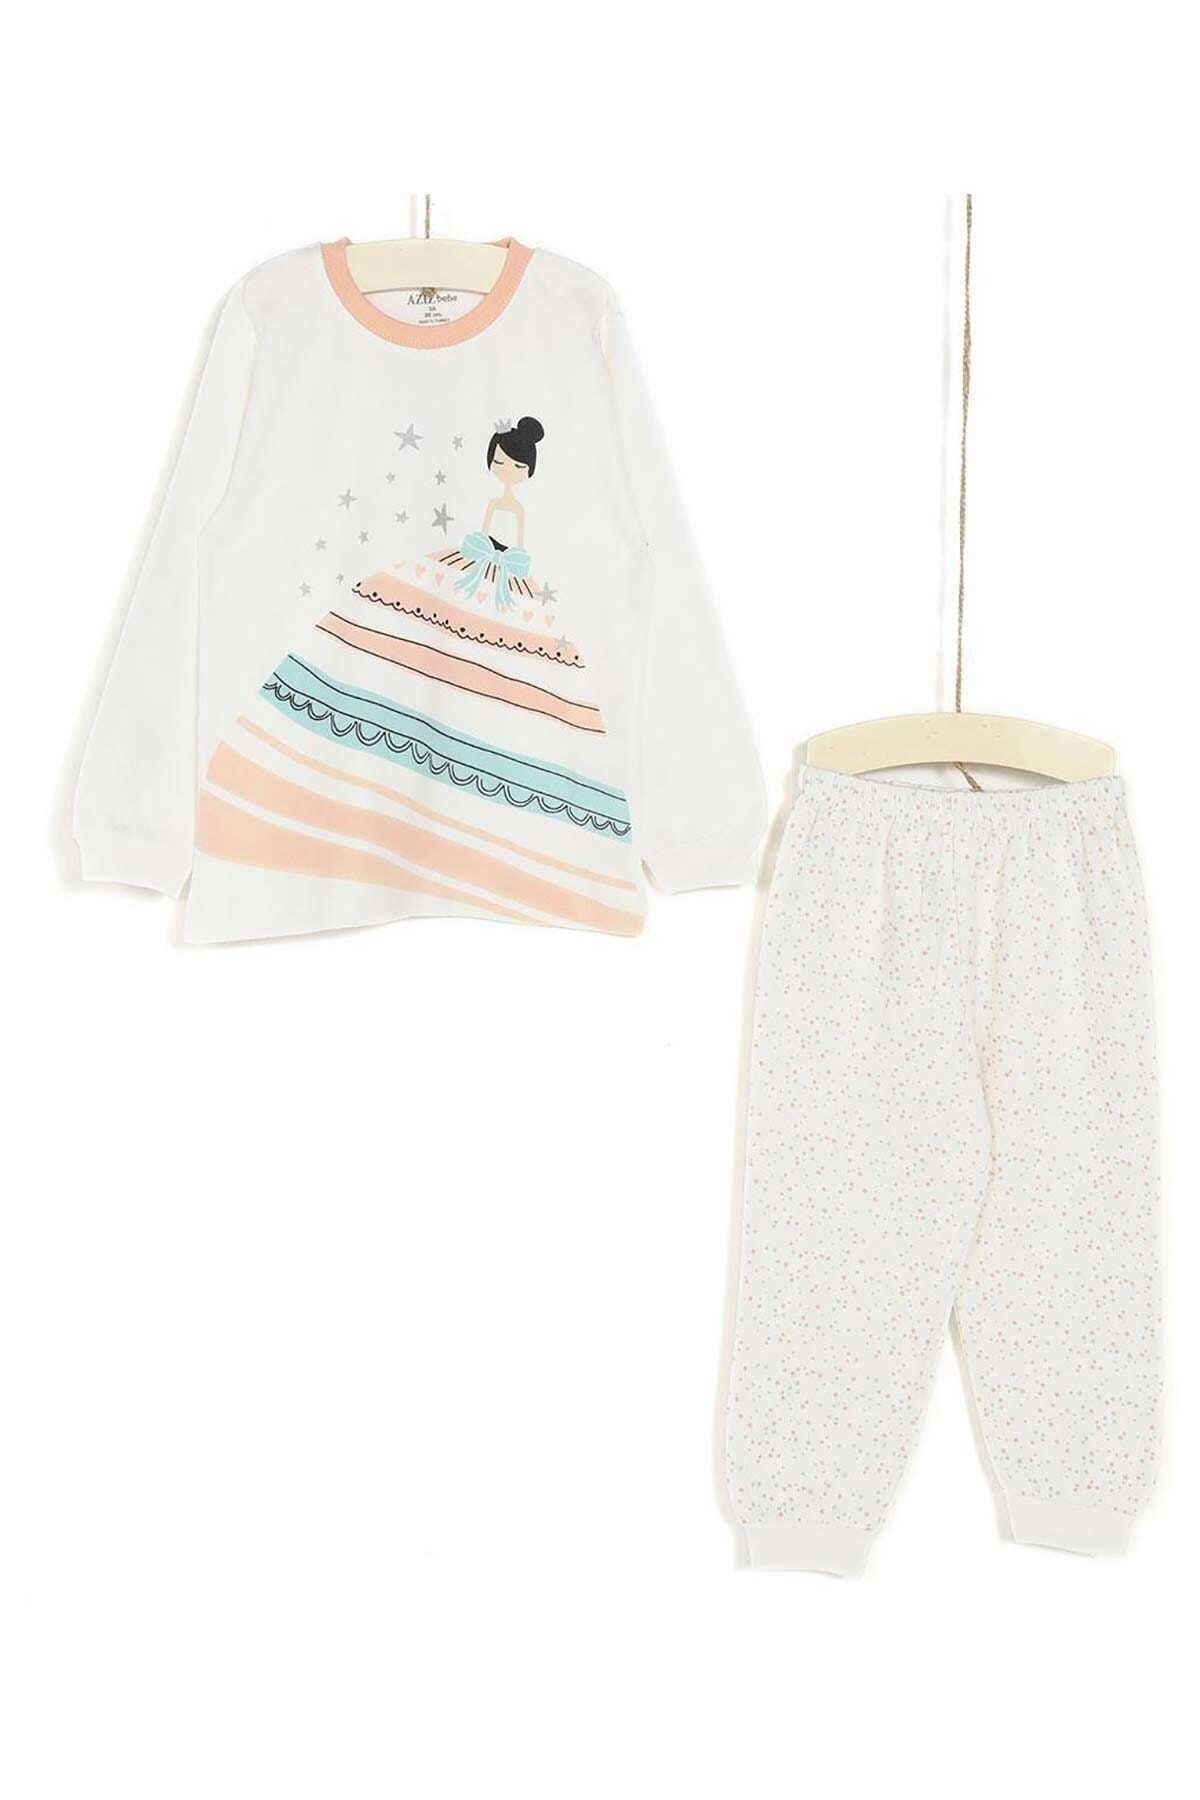 Aziz Bebe Kız Çocuk Pijama Takımı 3-6 Yaş Ekru 9371